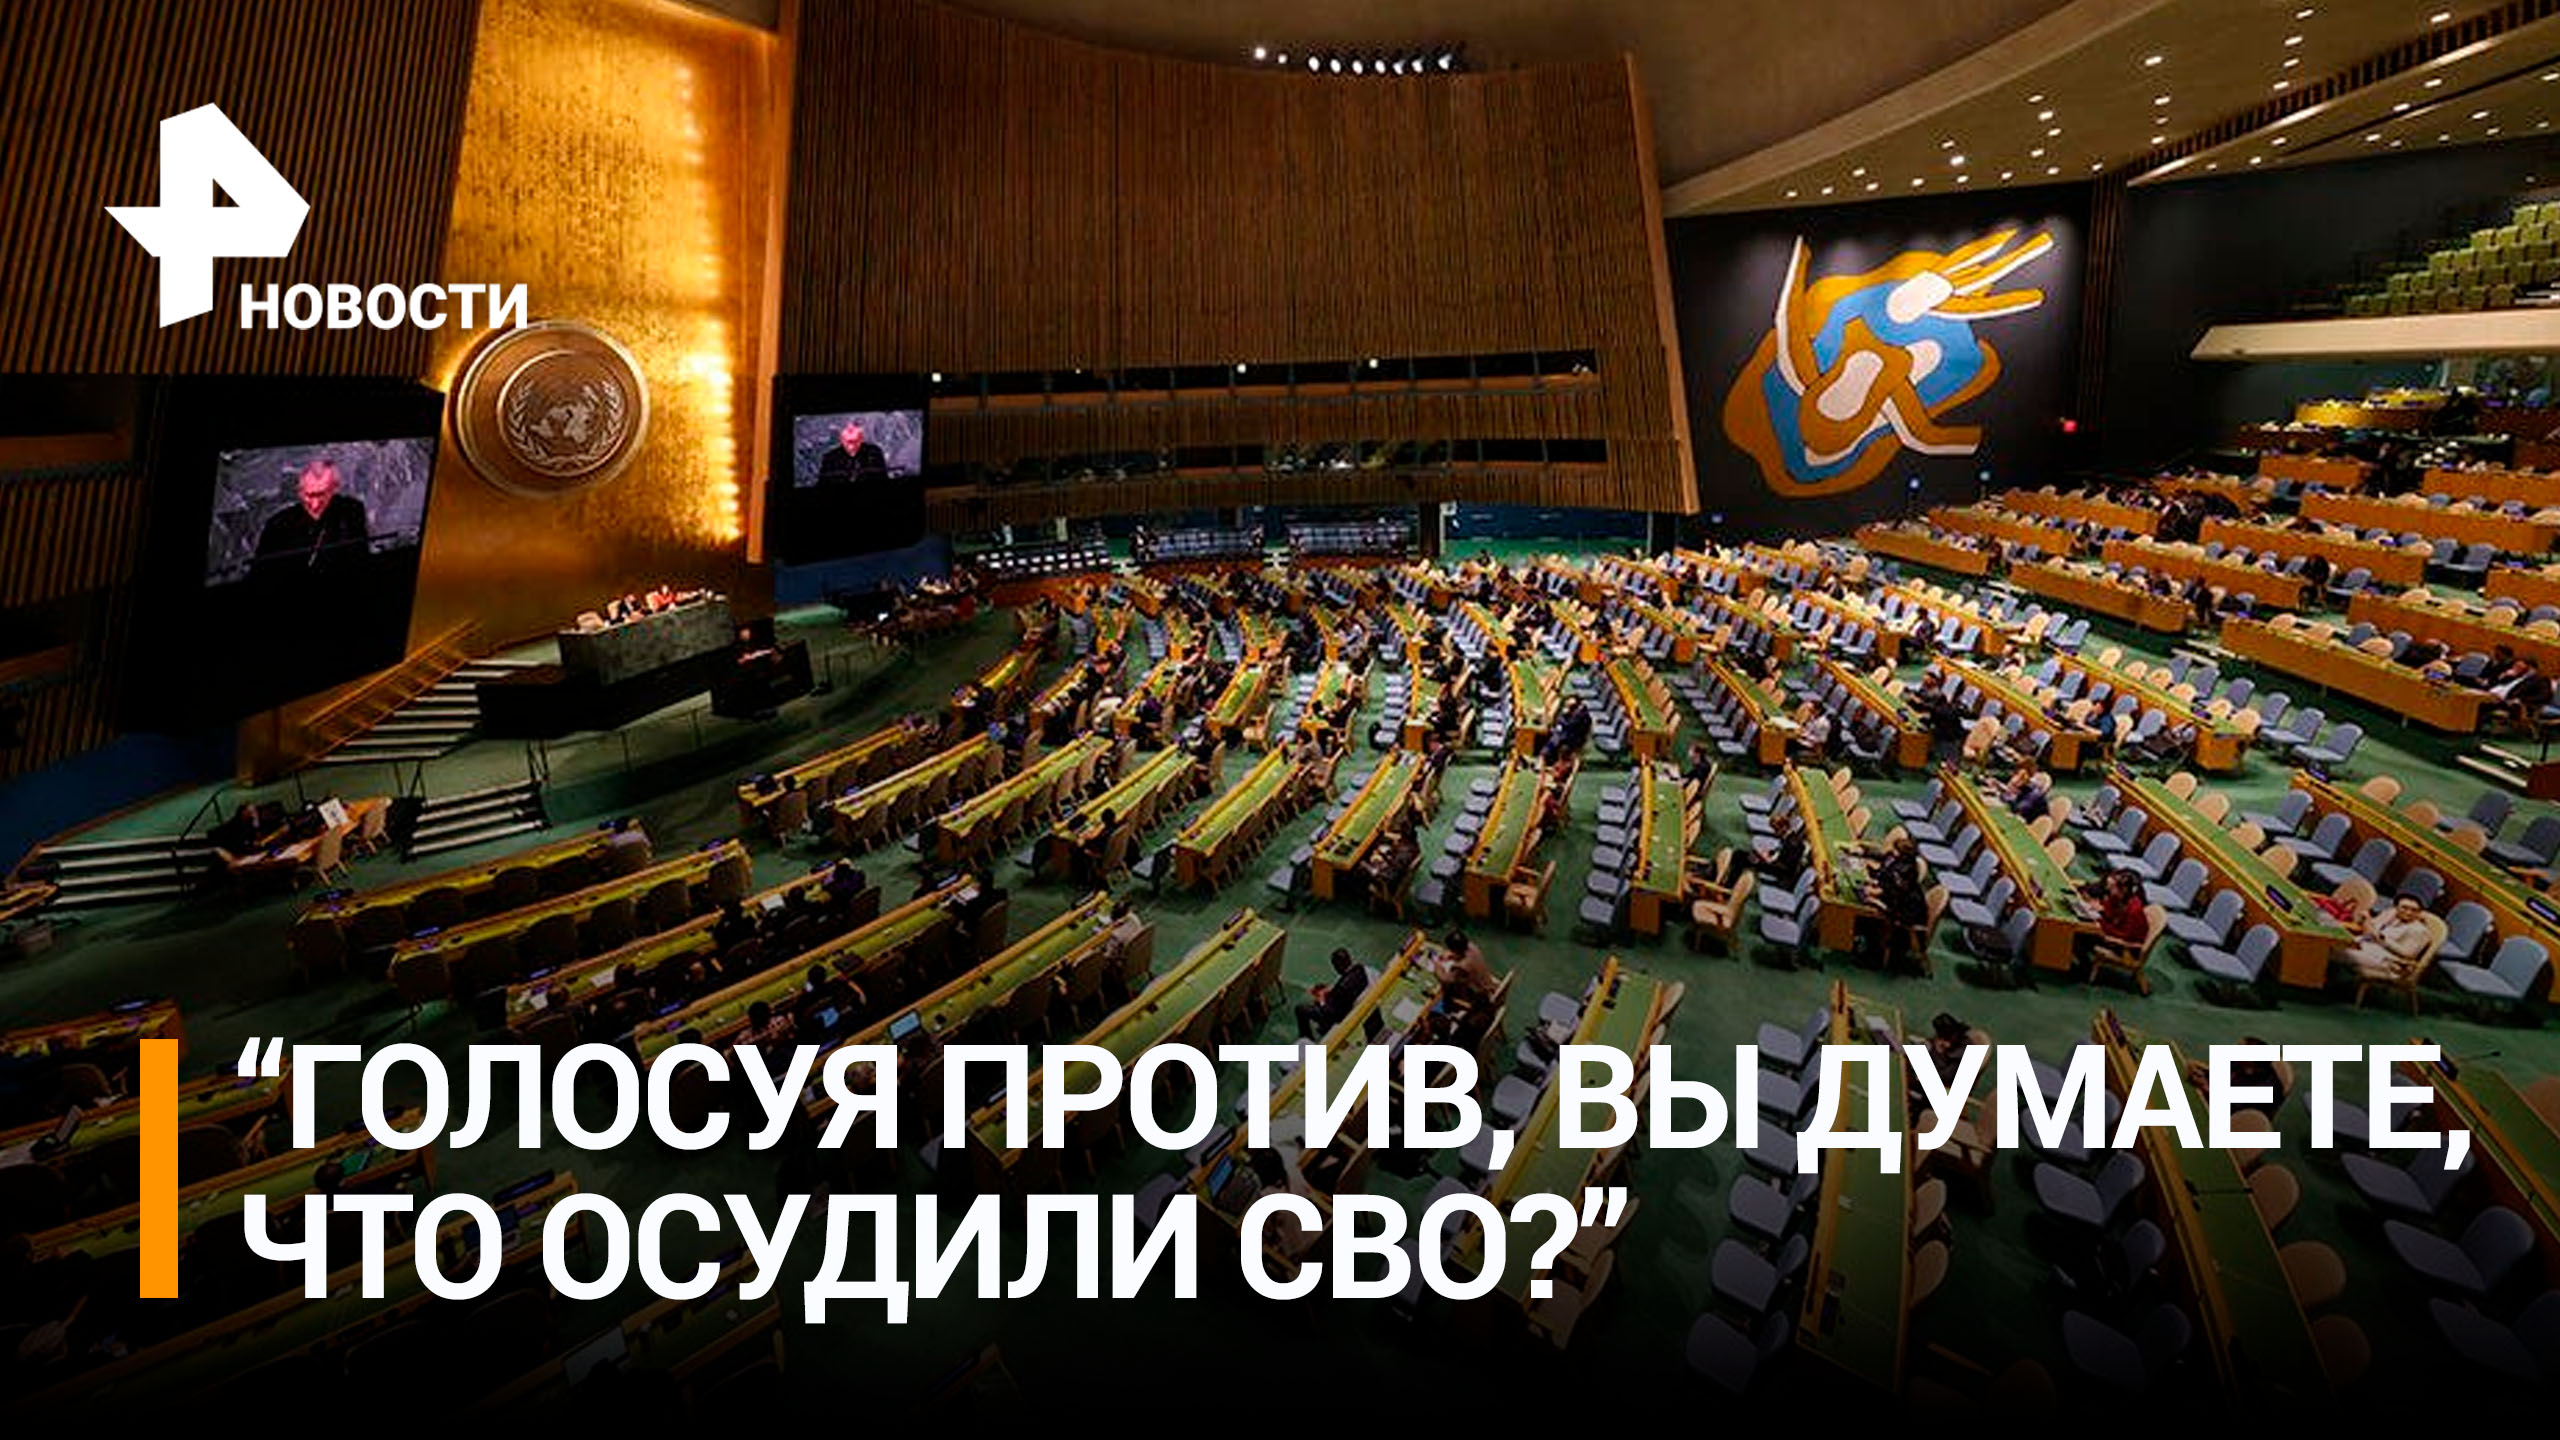 ГА ООН приняла резолюцию России по борьбе с героизацией нацизма / РЕН Новости